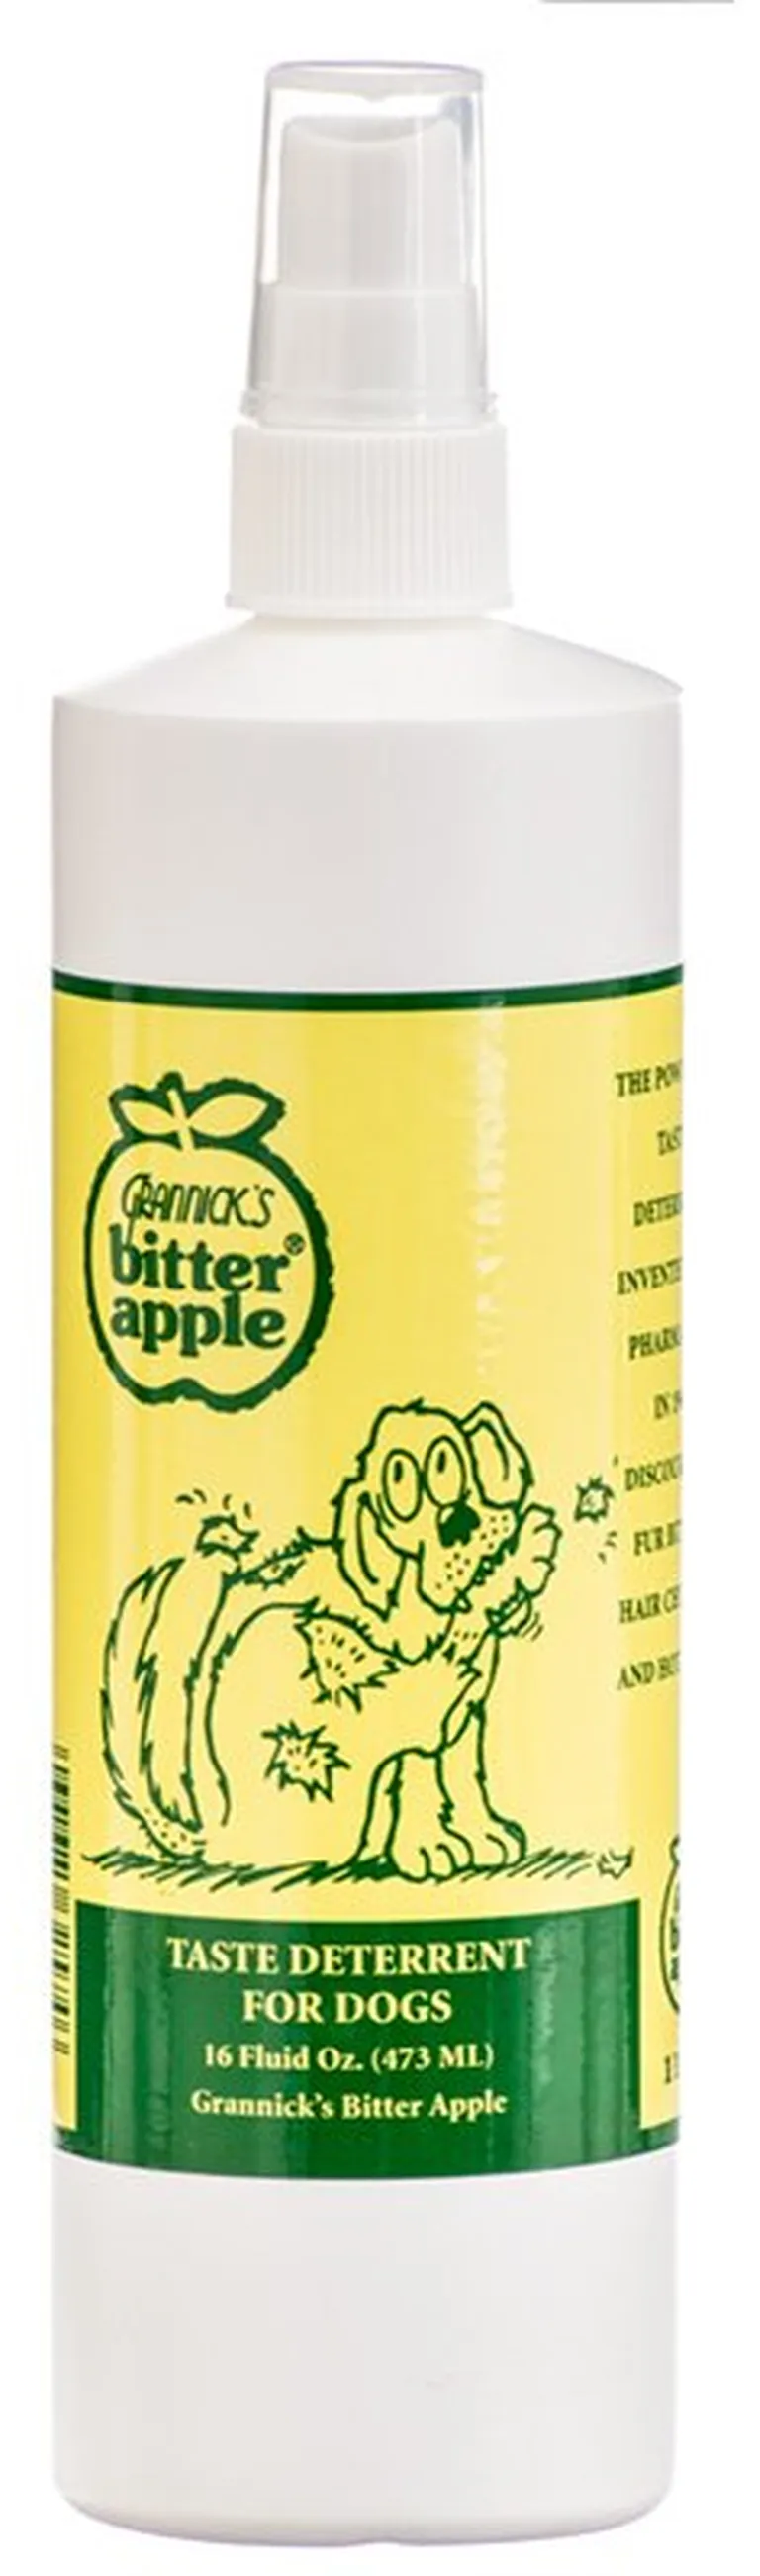 Grannicks Bitter Apple Spray for Dogs Photo 2